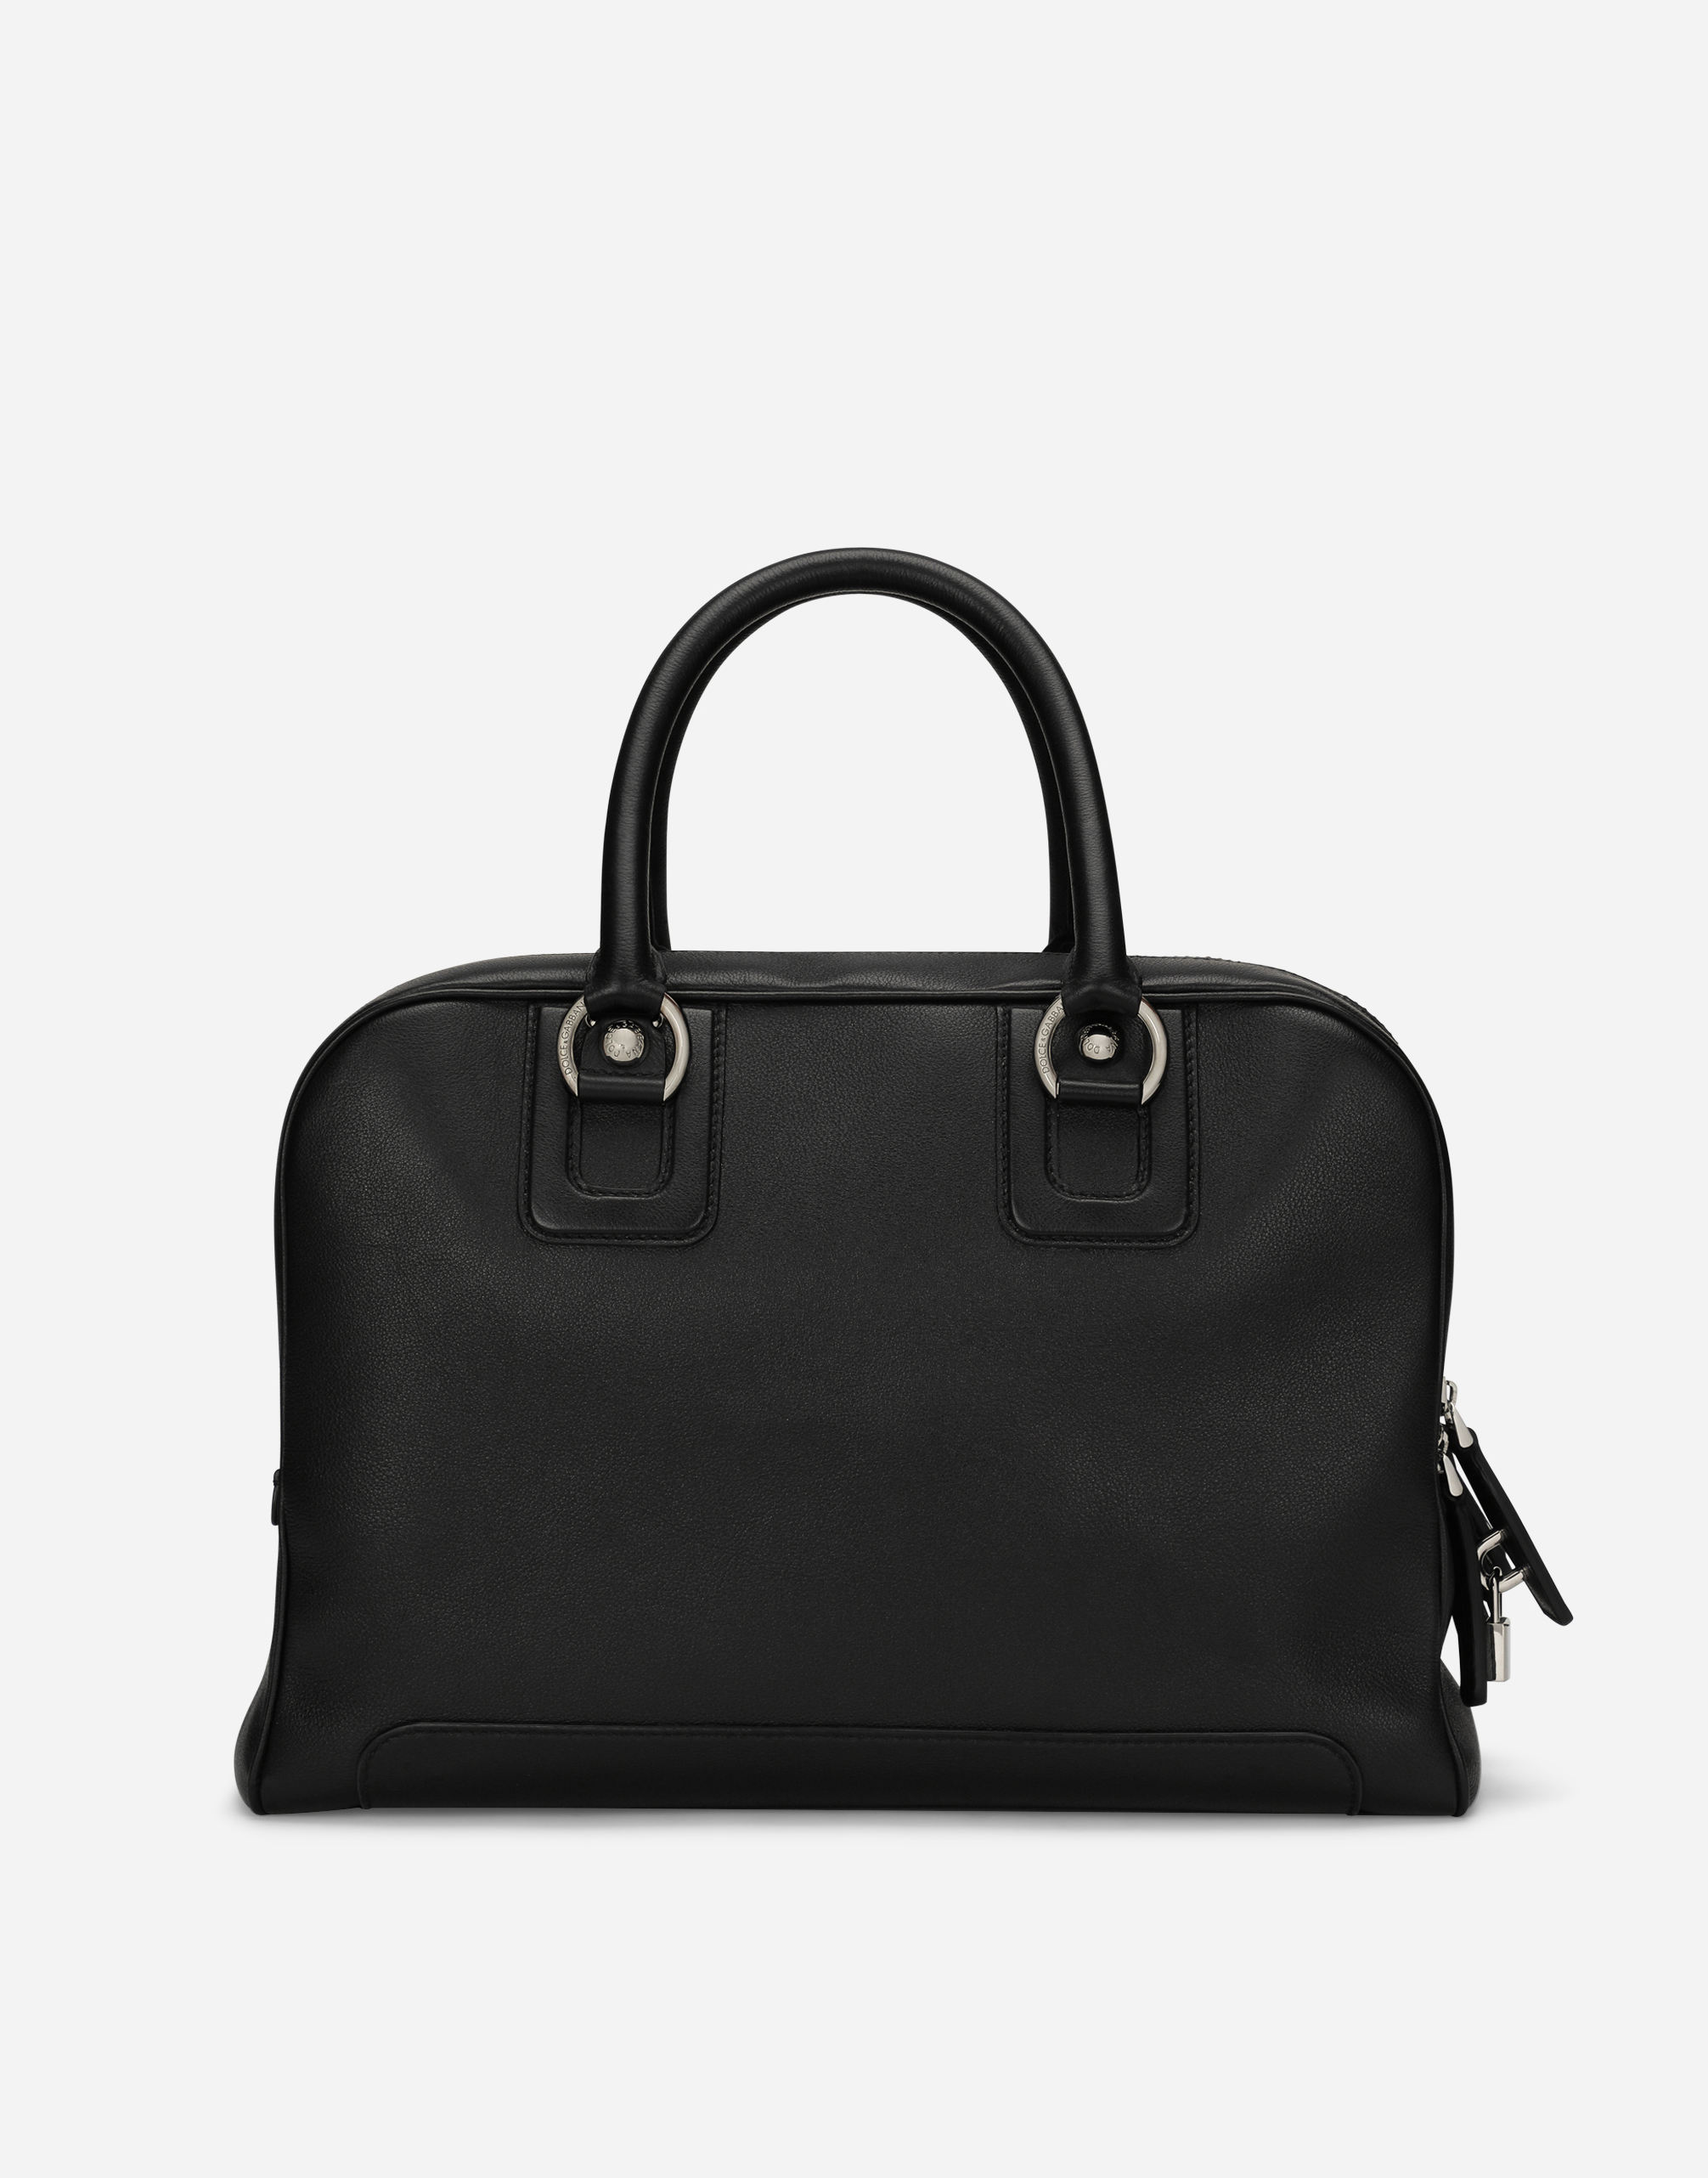 Dolce & Gabbana Calfskin Bag In Black